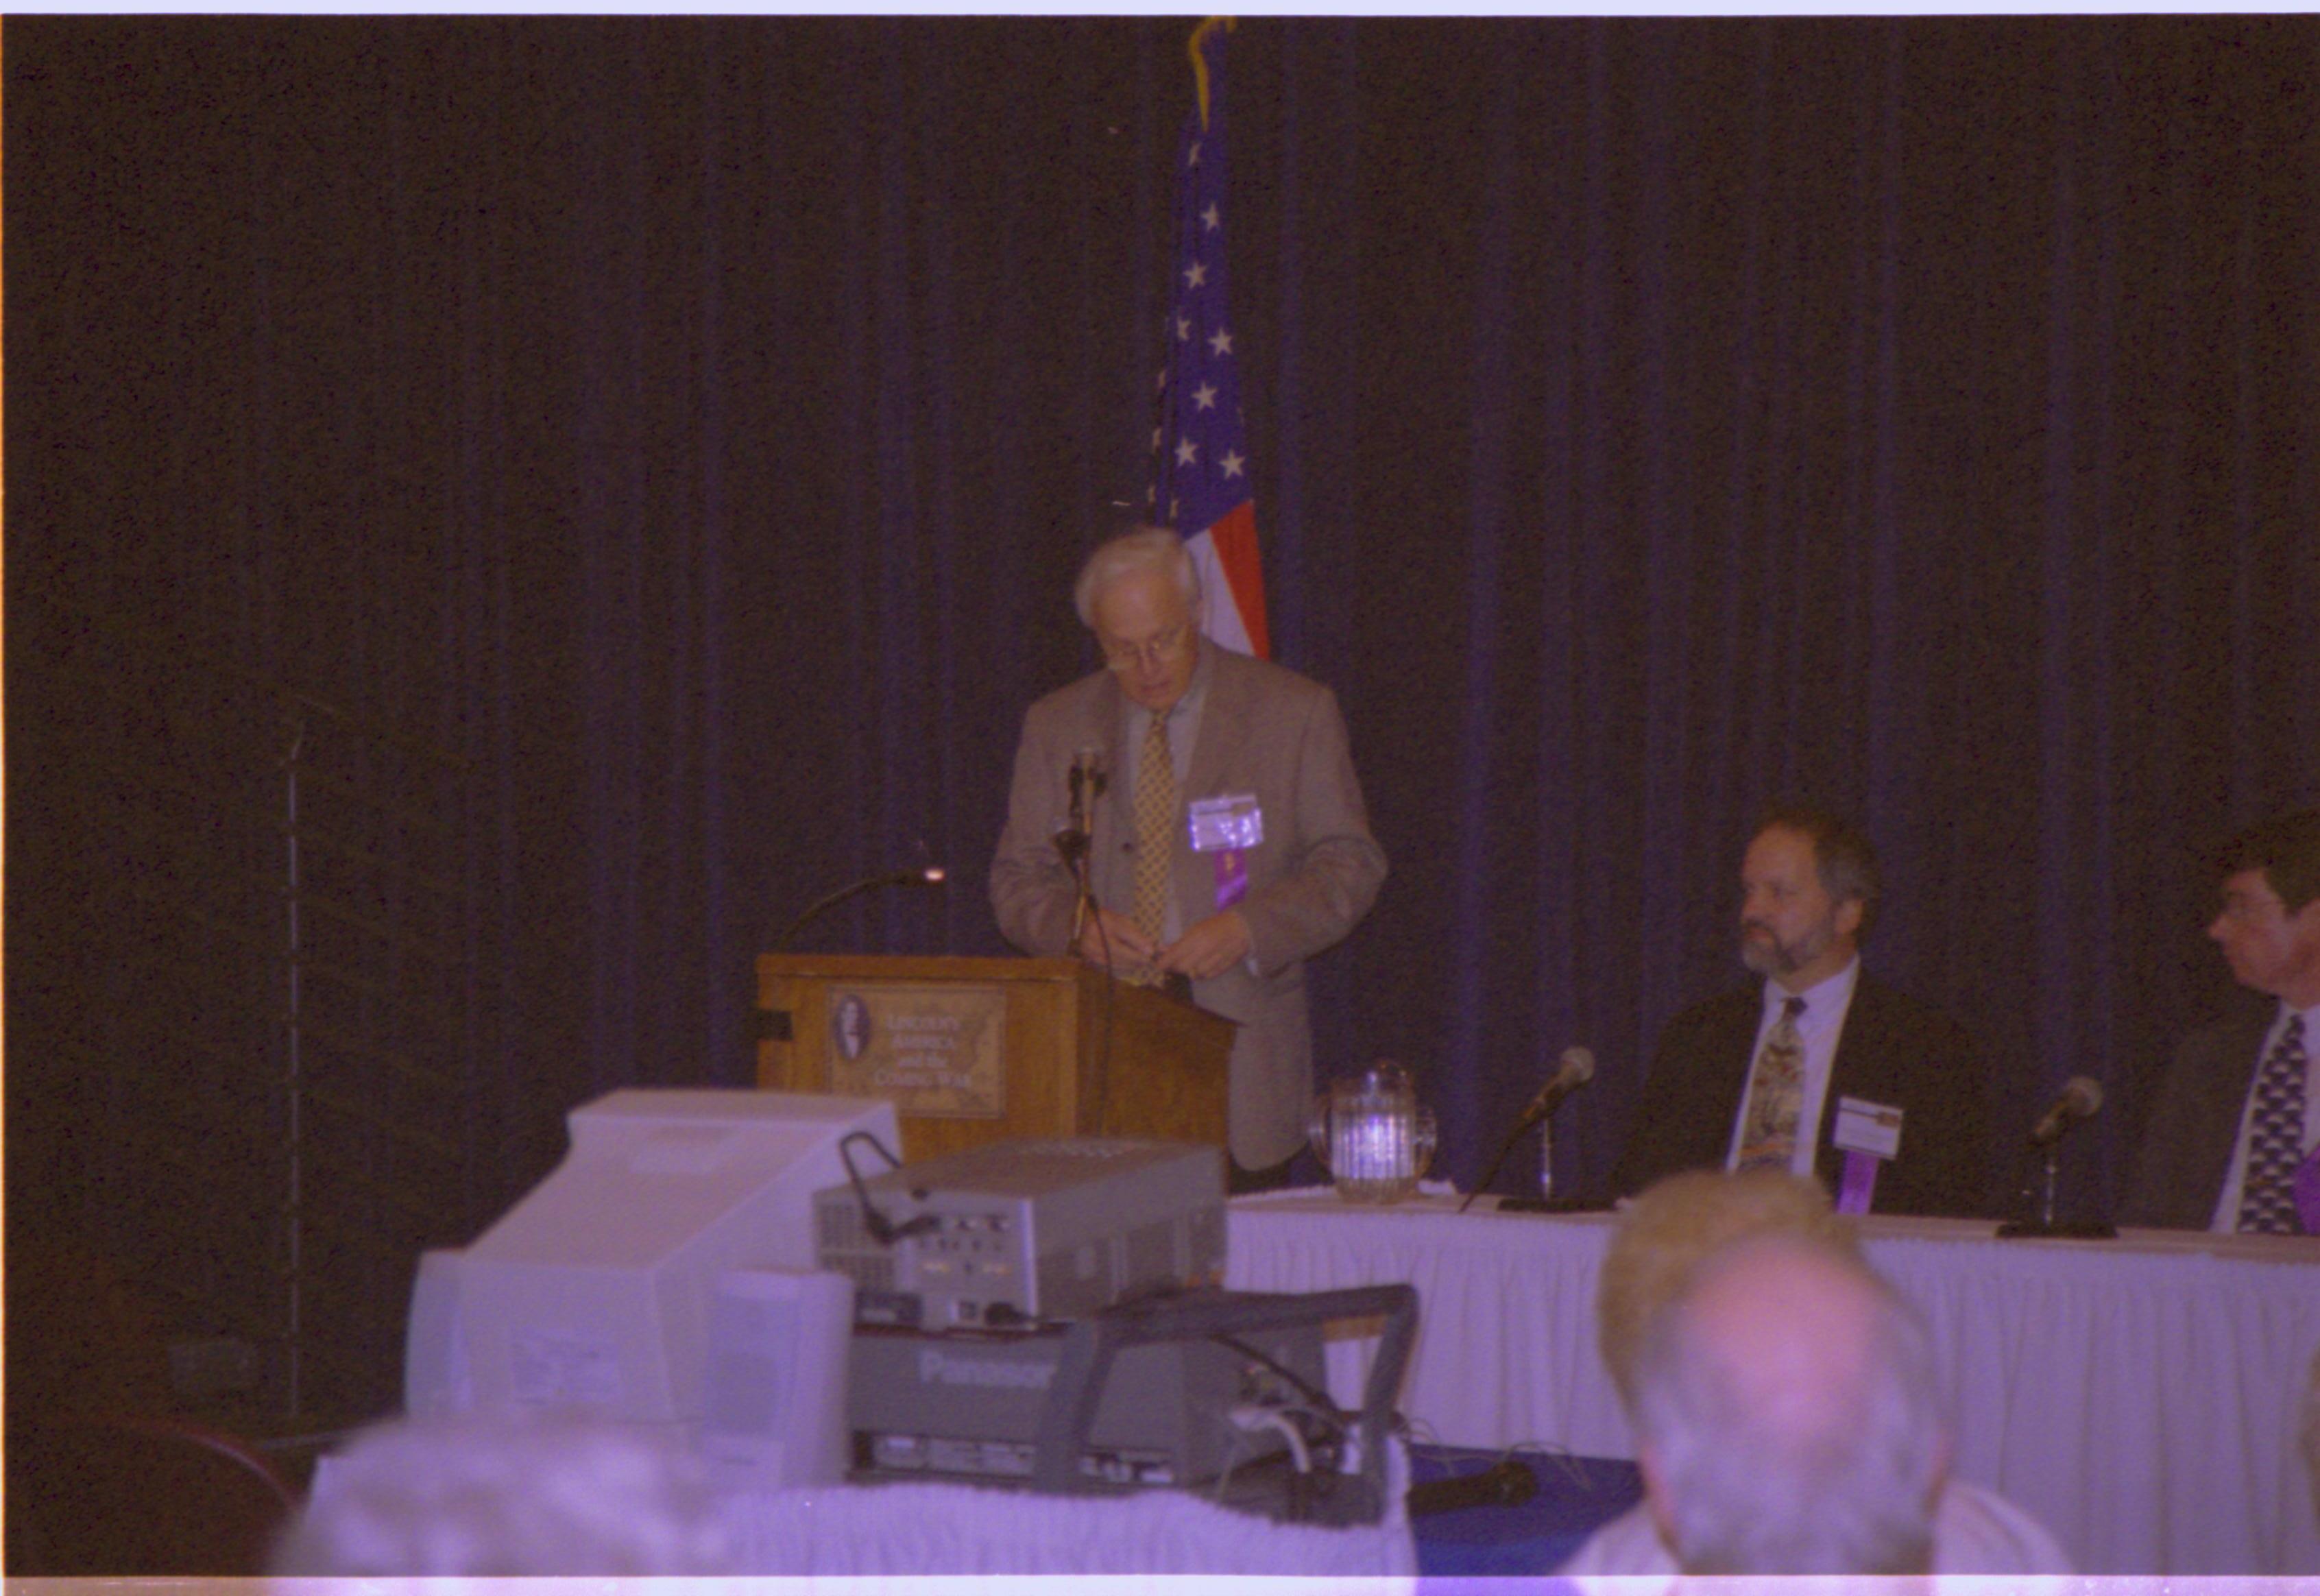 Speaker at podium (yellow tie). Colloquium, 2001